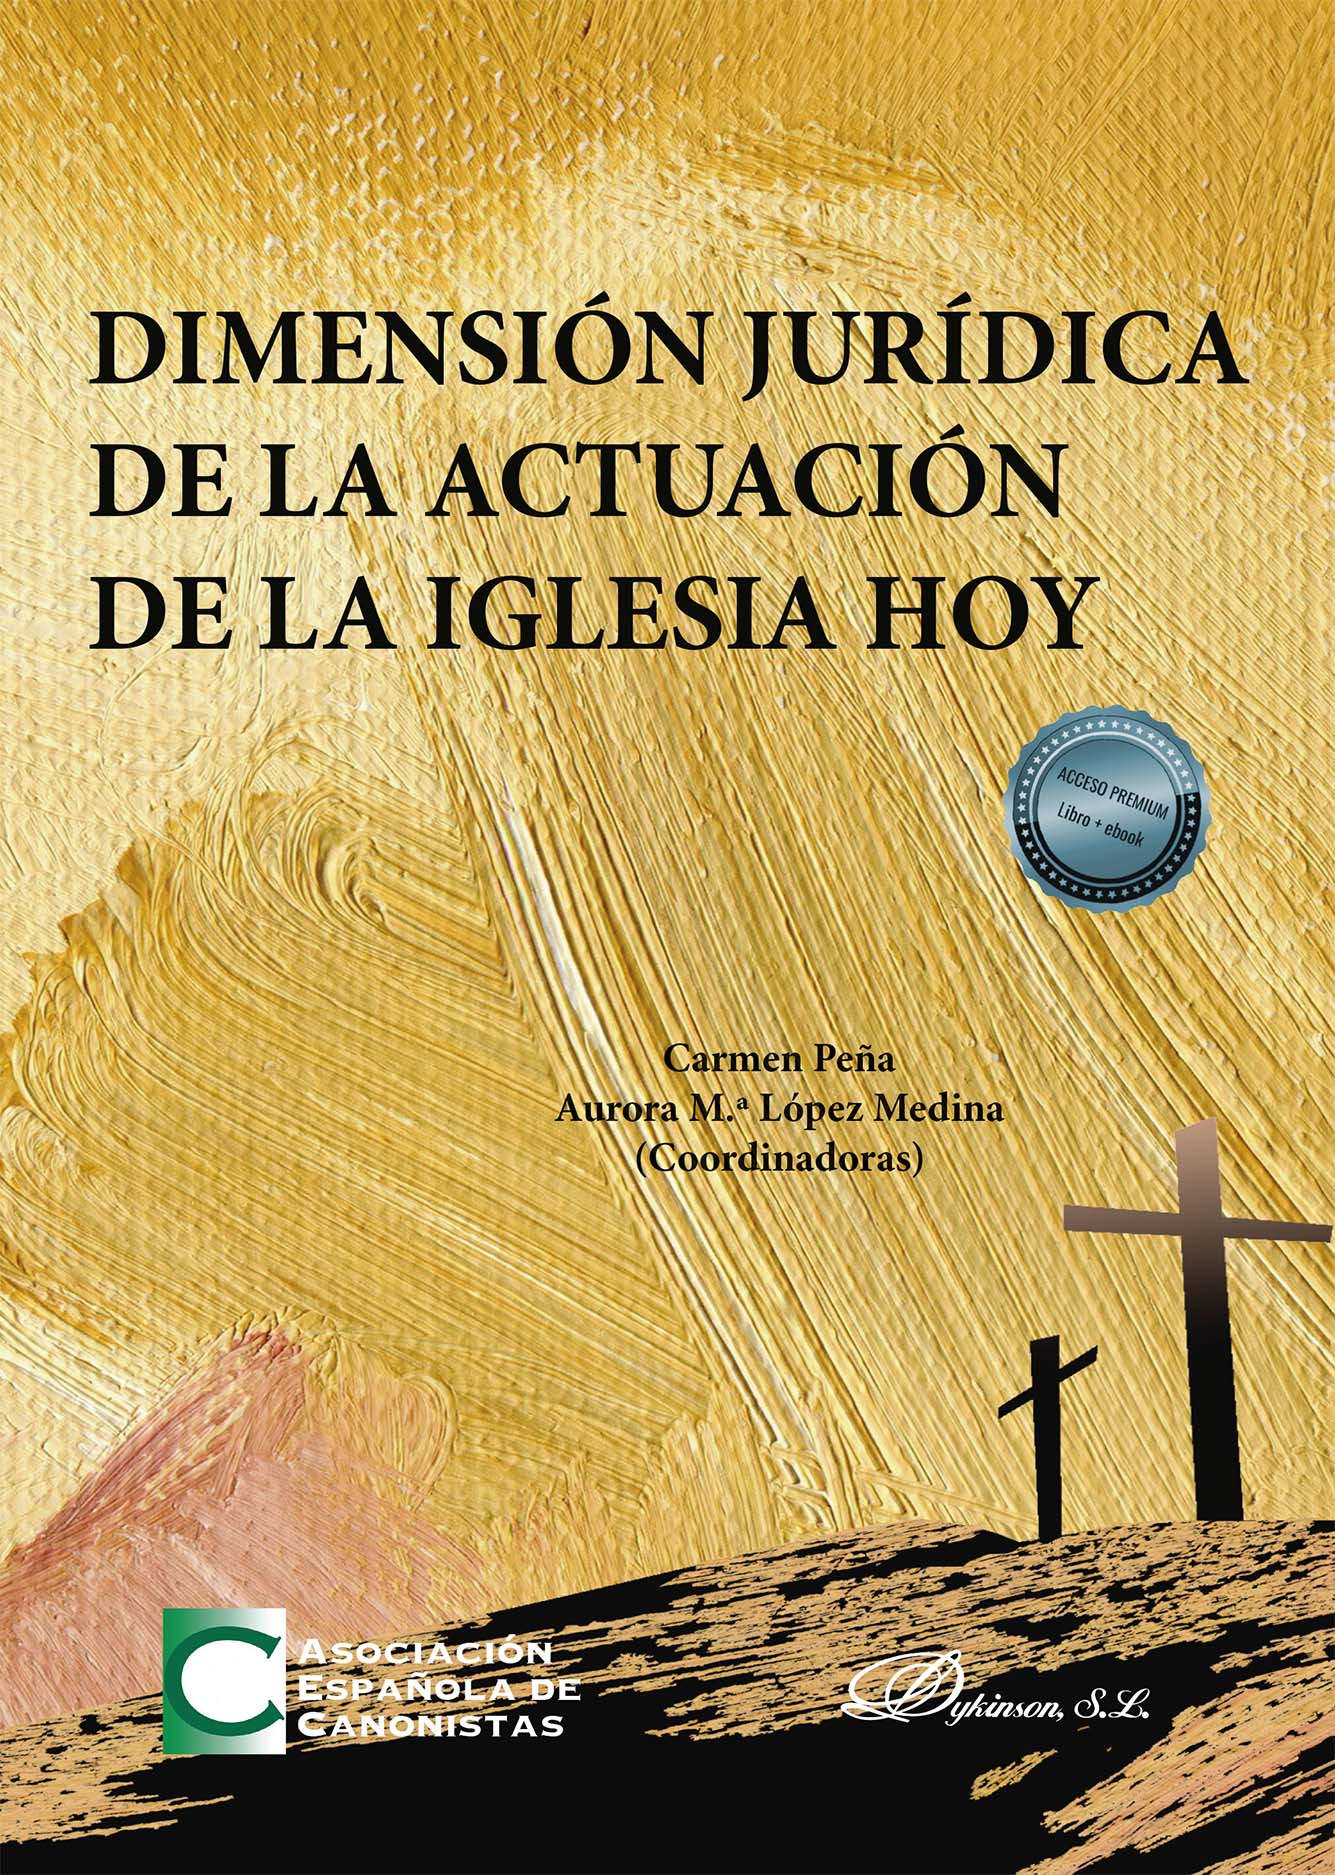 Imagen de portada del libro Dimensión jurídica de la actuación de la Iglesia hoy